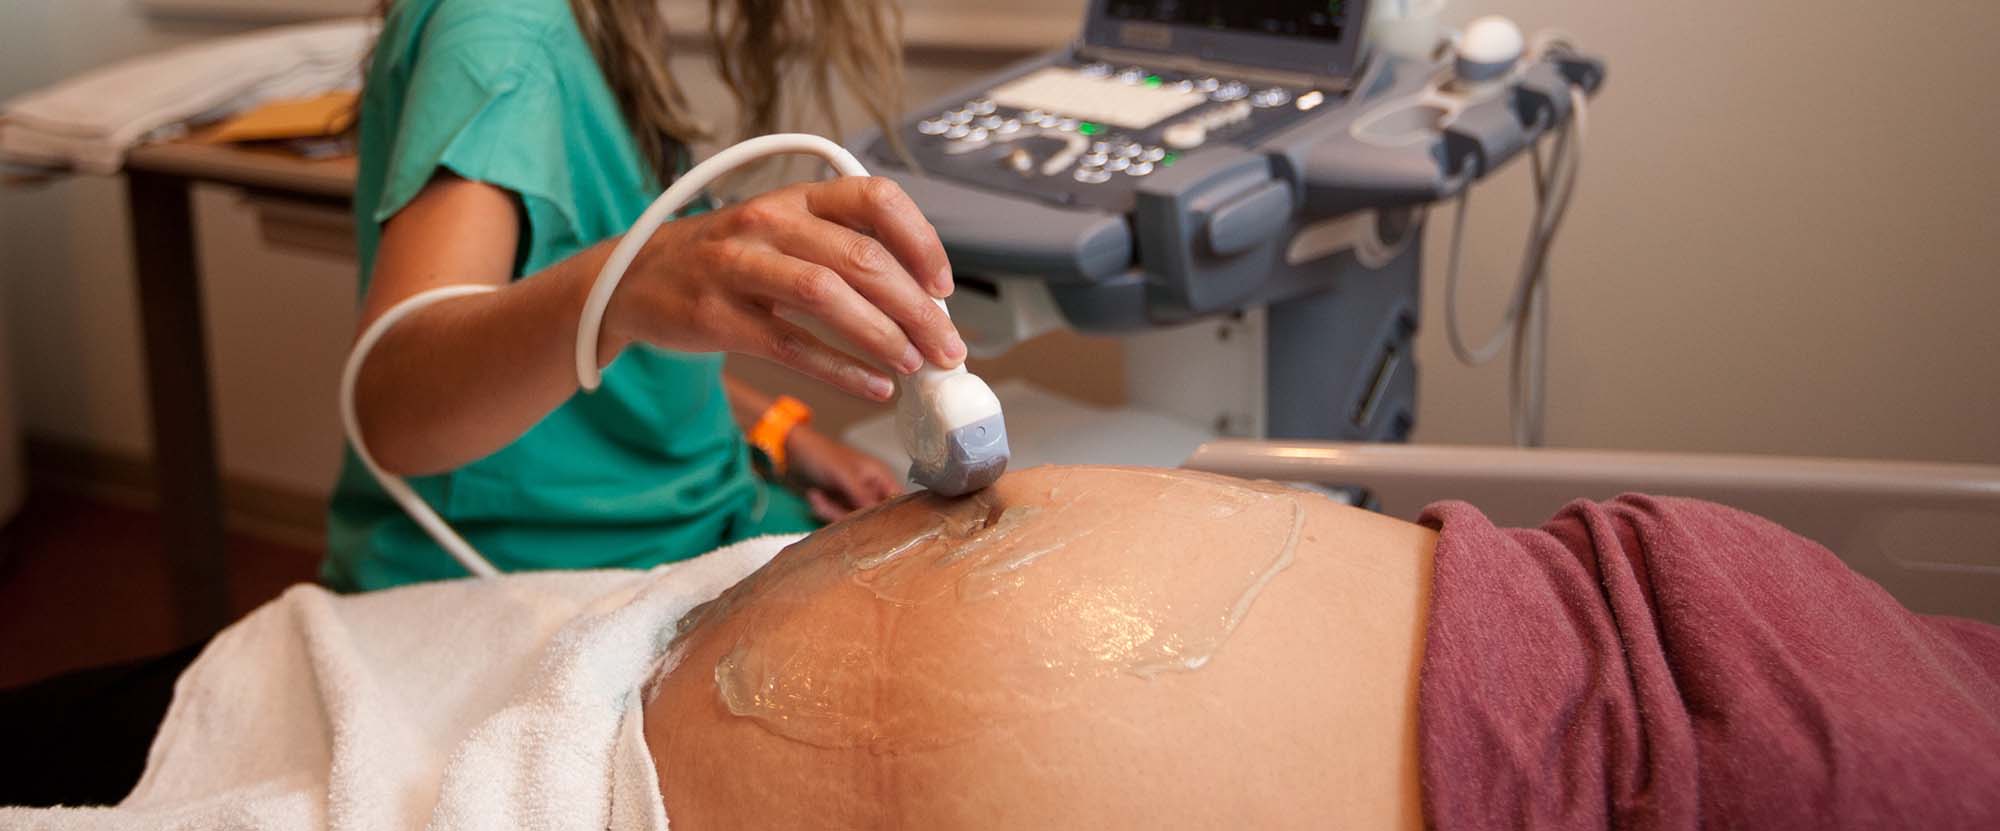 超音波検査を受けている妊娠中の母親